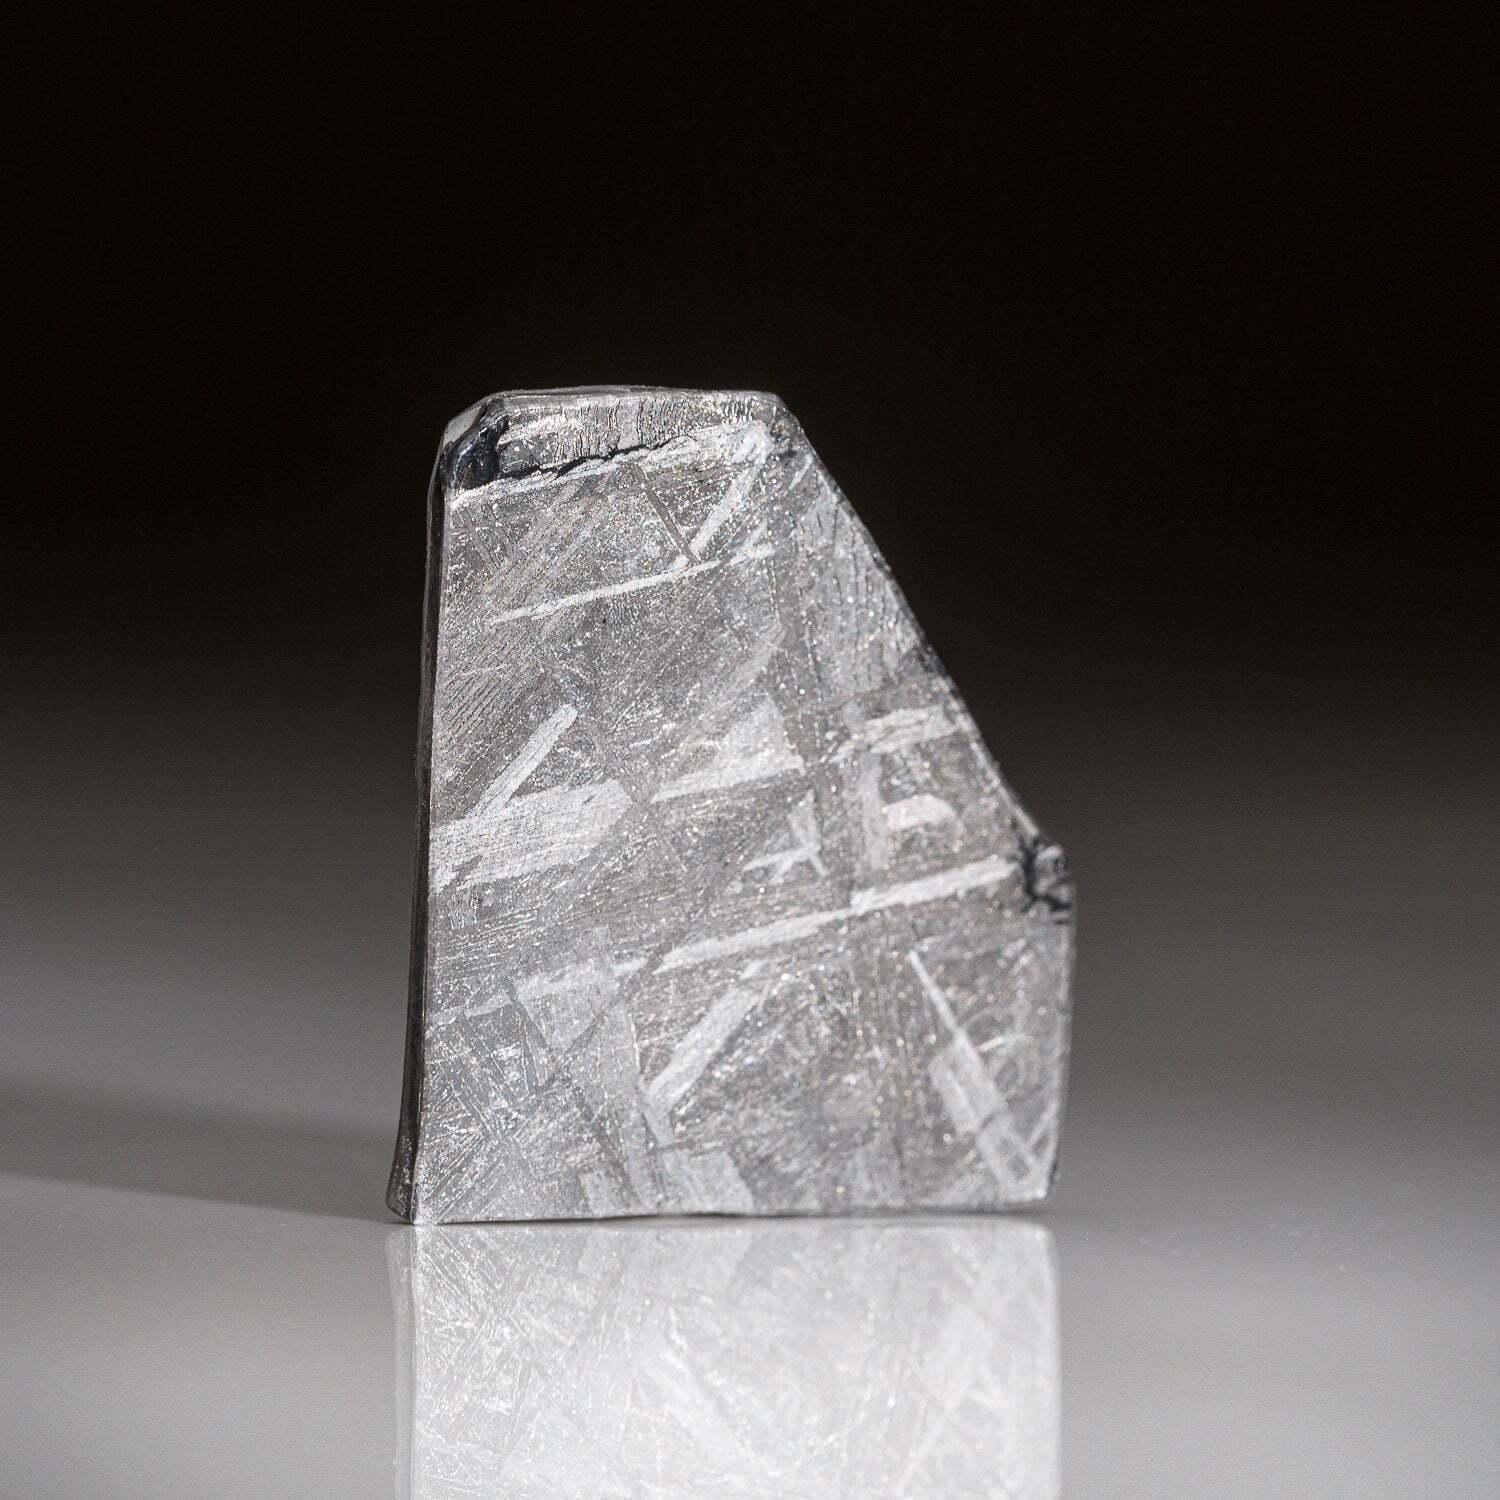 Genuine Muonionalusta Meteorite Slice (6.3 grams)